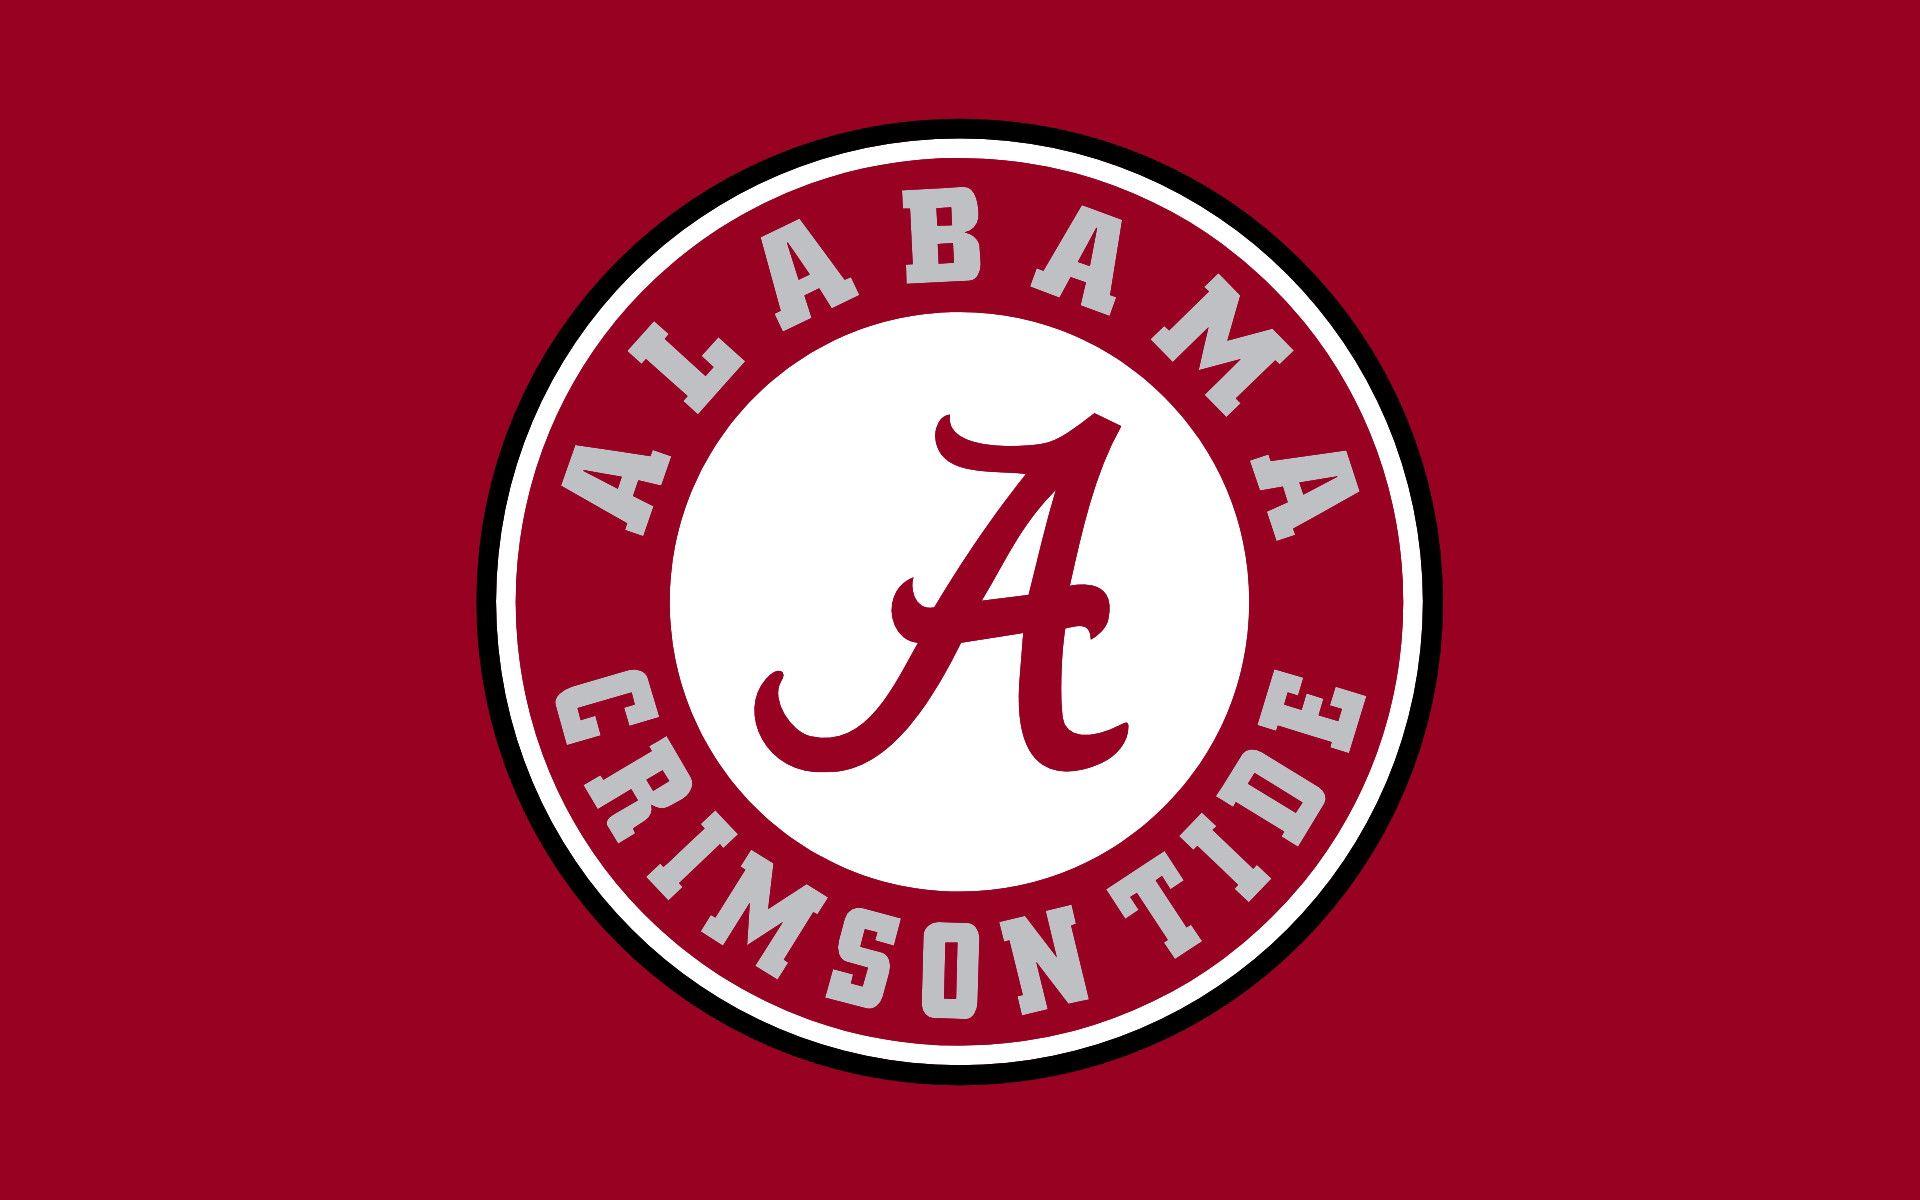 Alabama Logo Wallpapers